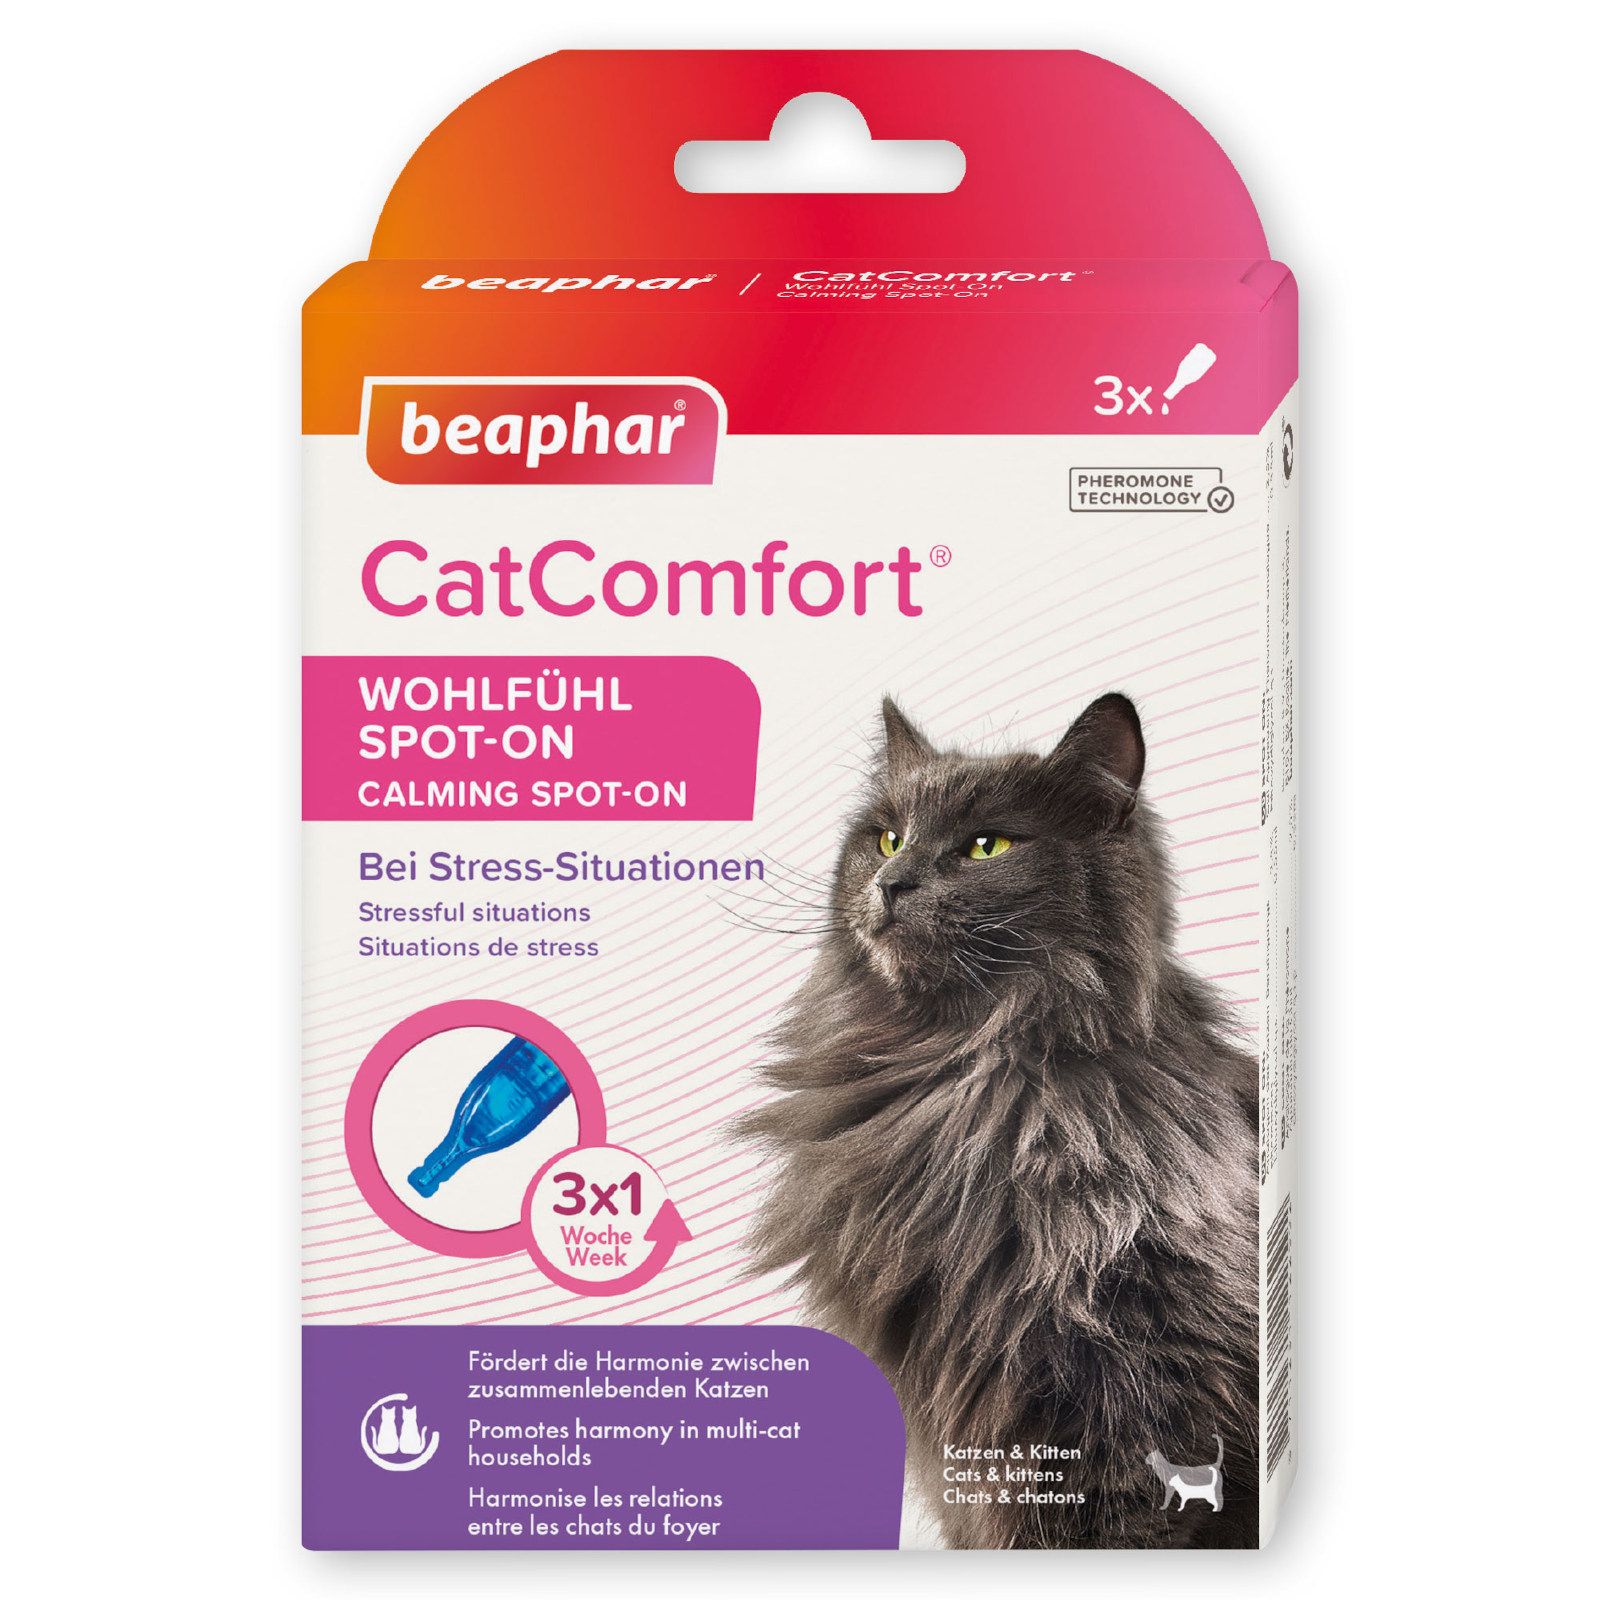 Beaphar CatComfort Wohlfühl Spot-On für Katzen